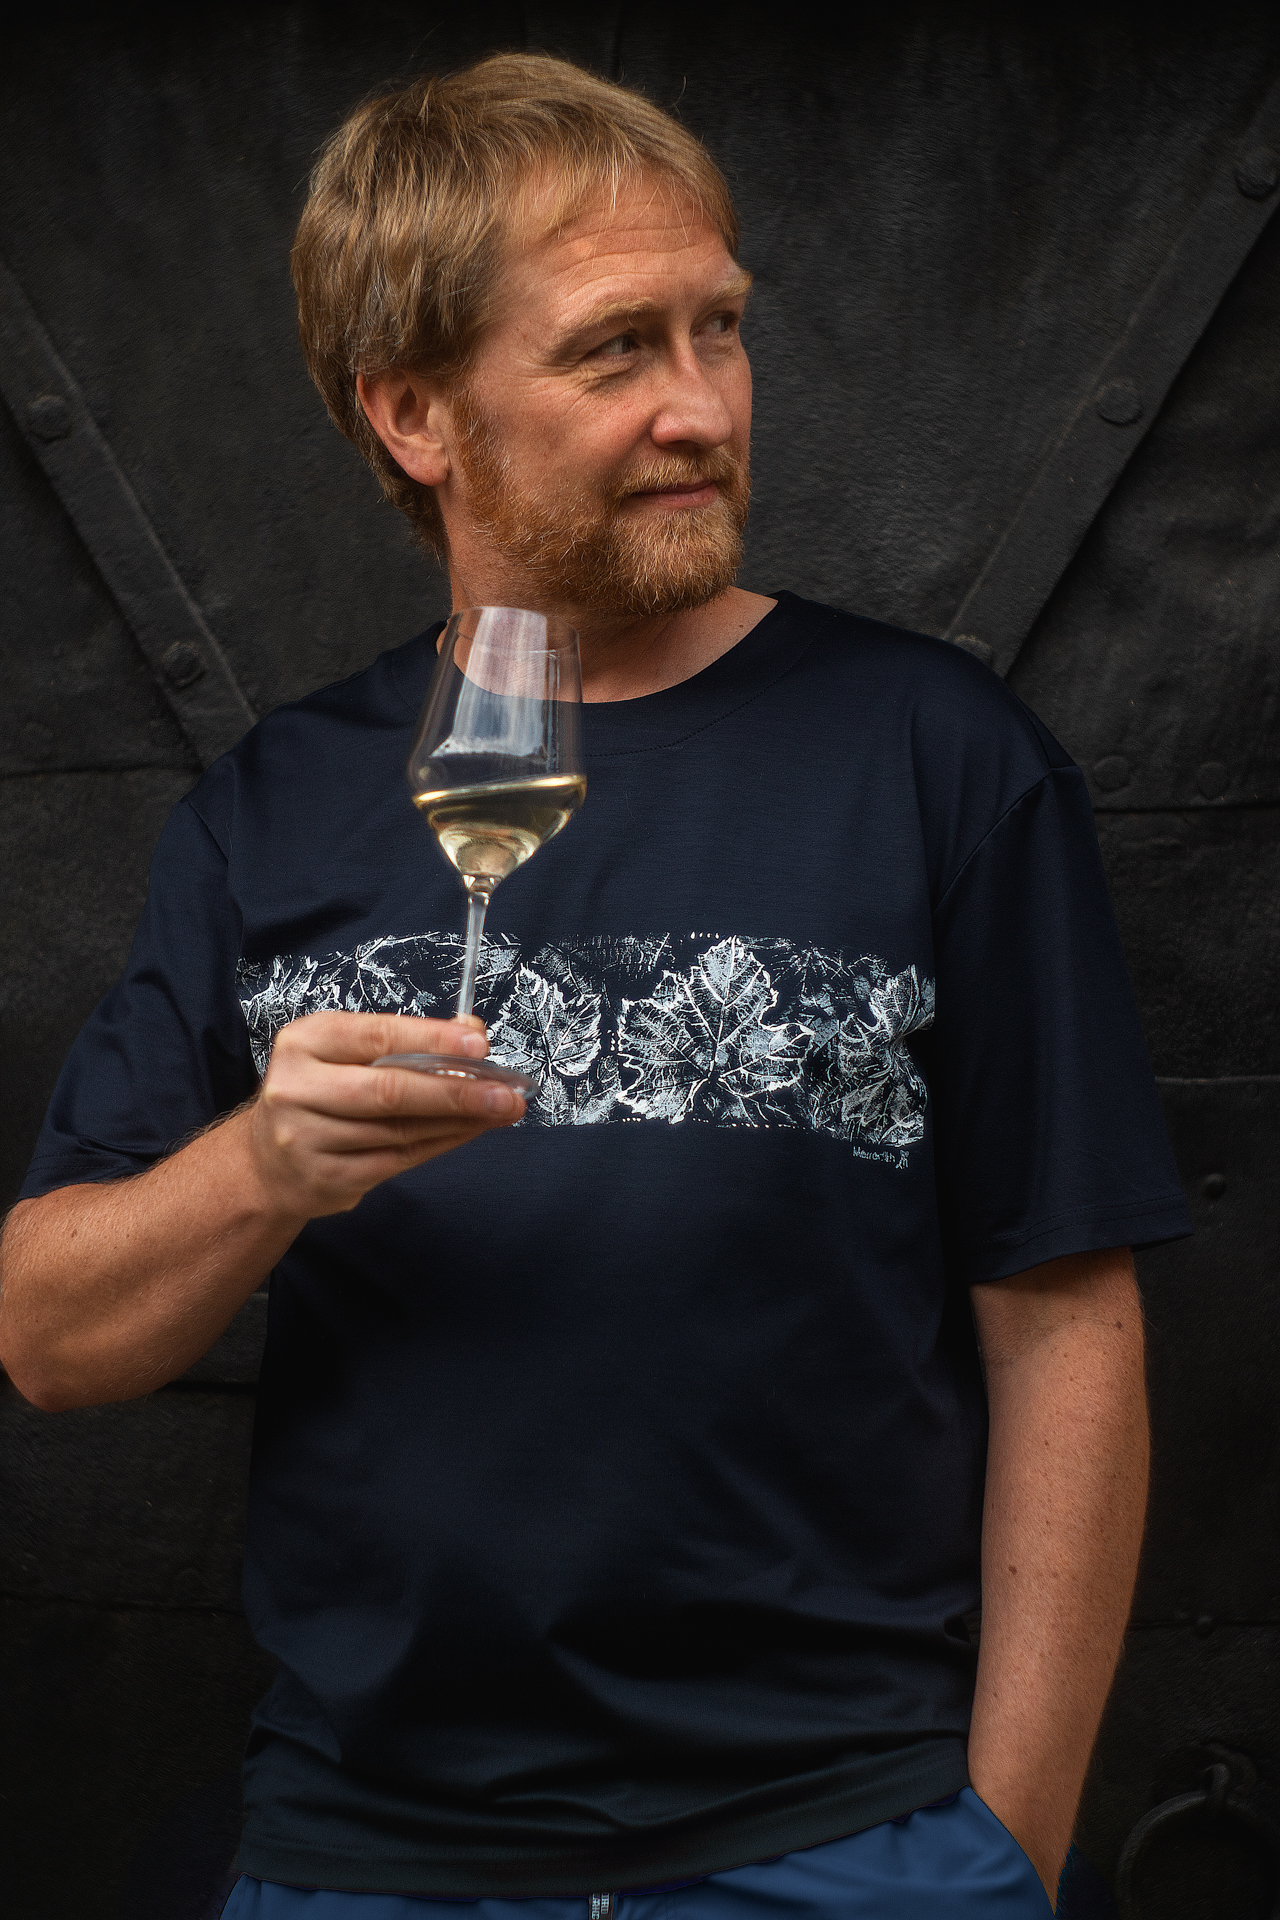 Tmavomodré pánske tričko In Vino s motívom viniča, model v ruke drží pohár bieleho vína